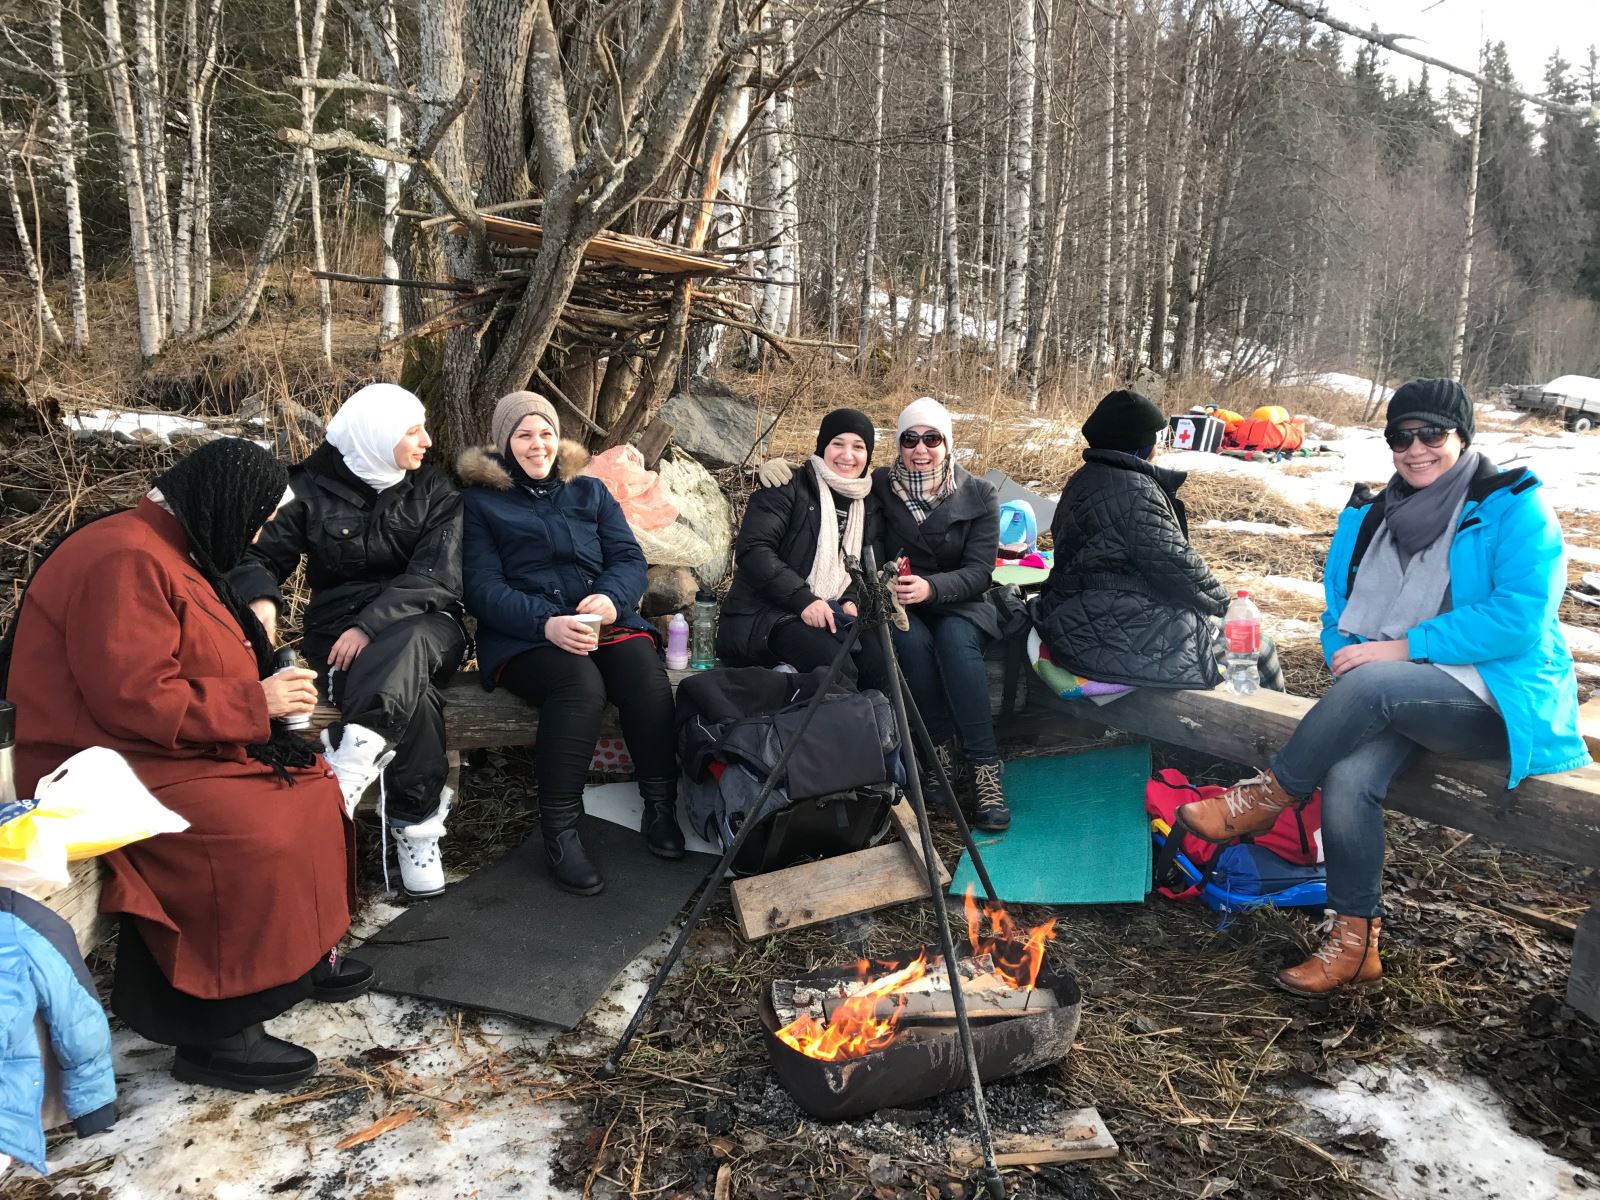 Kvinnene sitter å varmer seg ved bålet